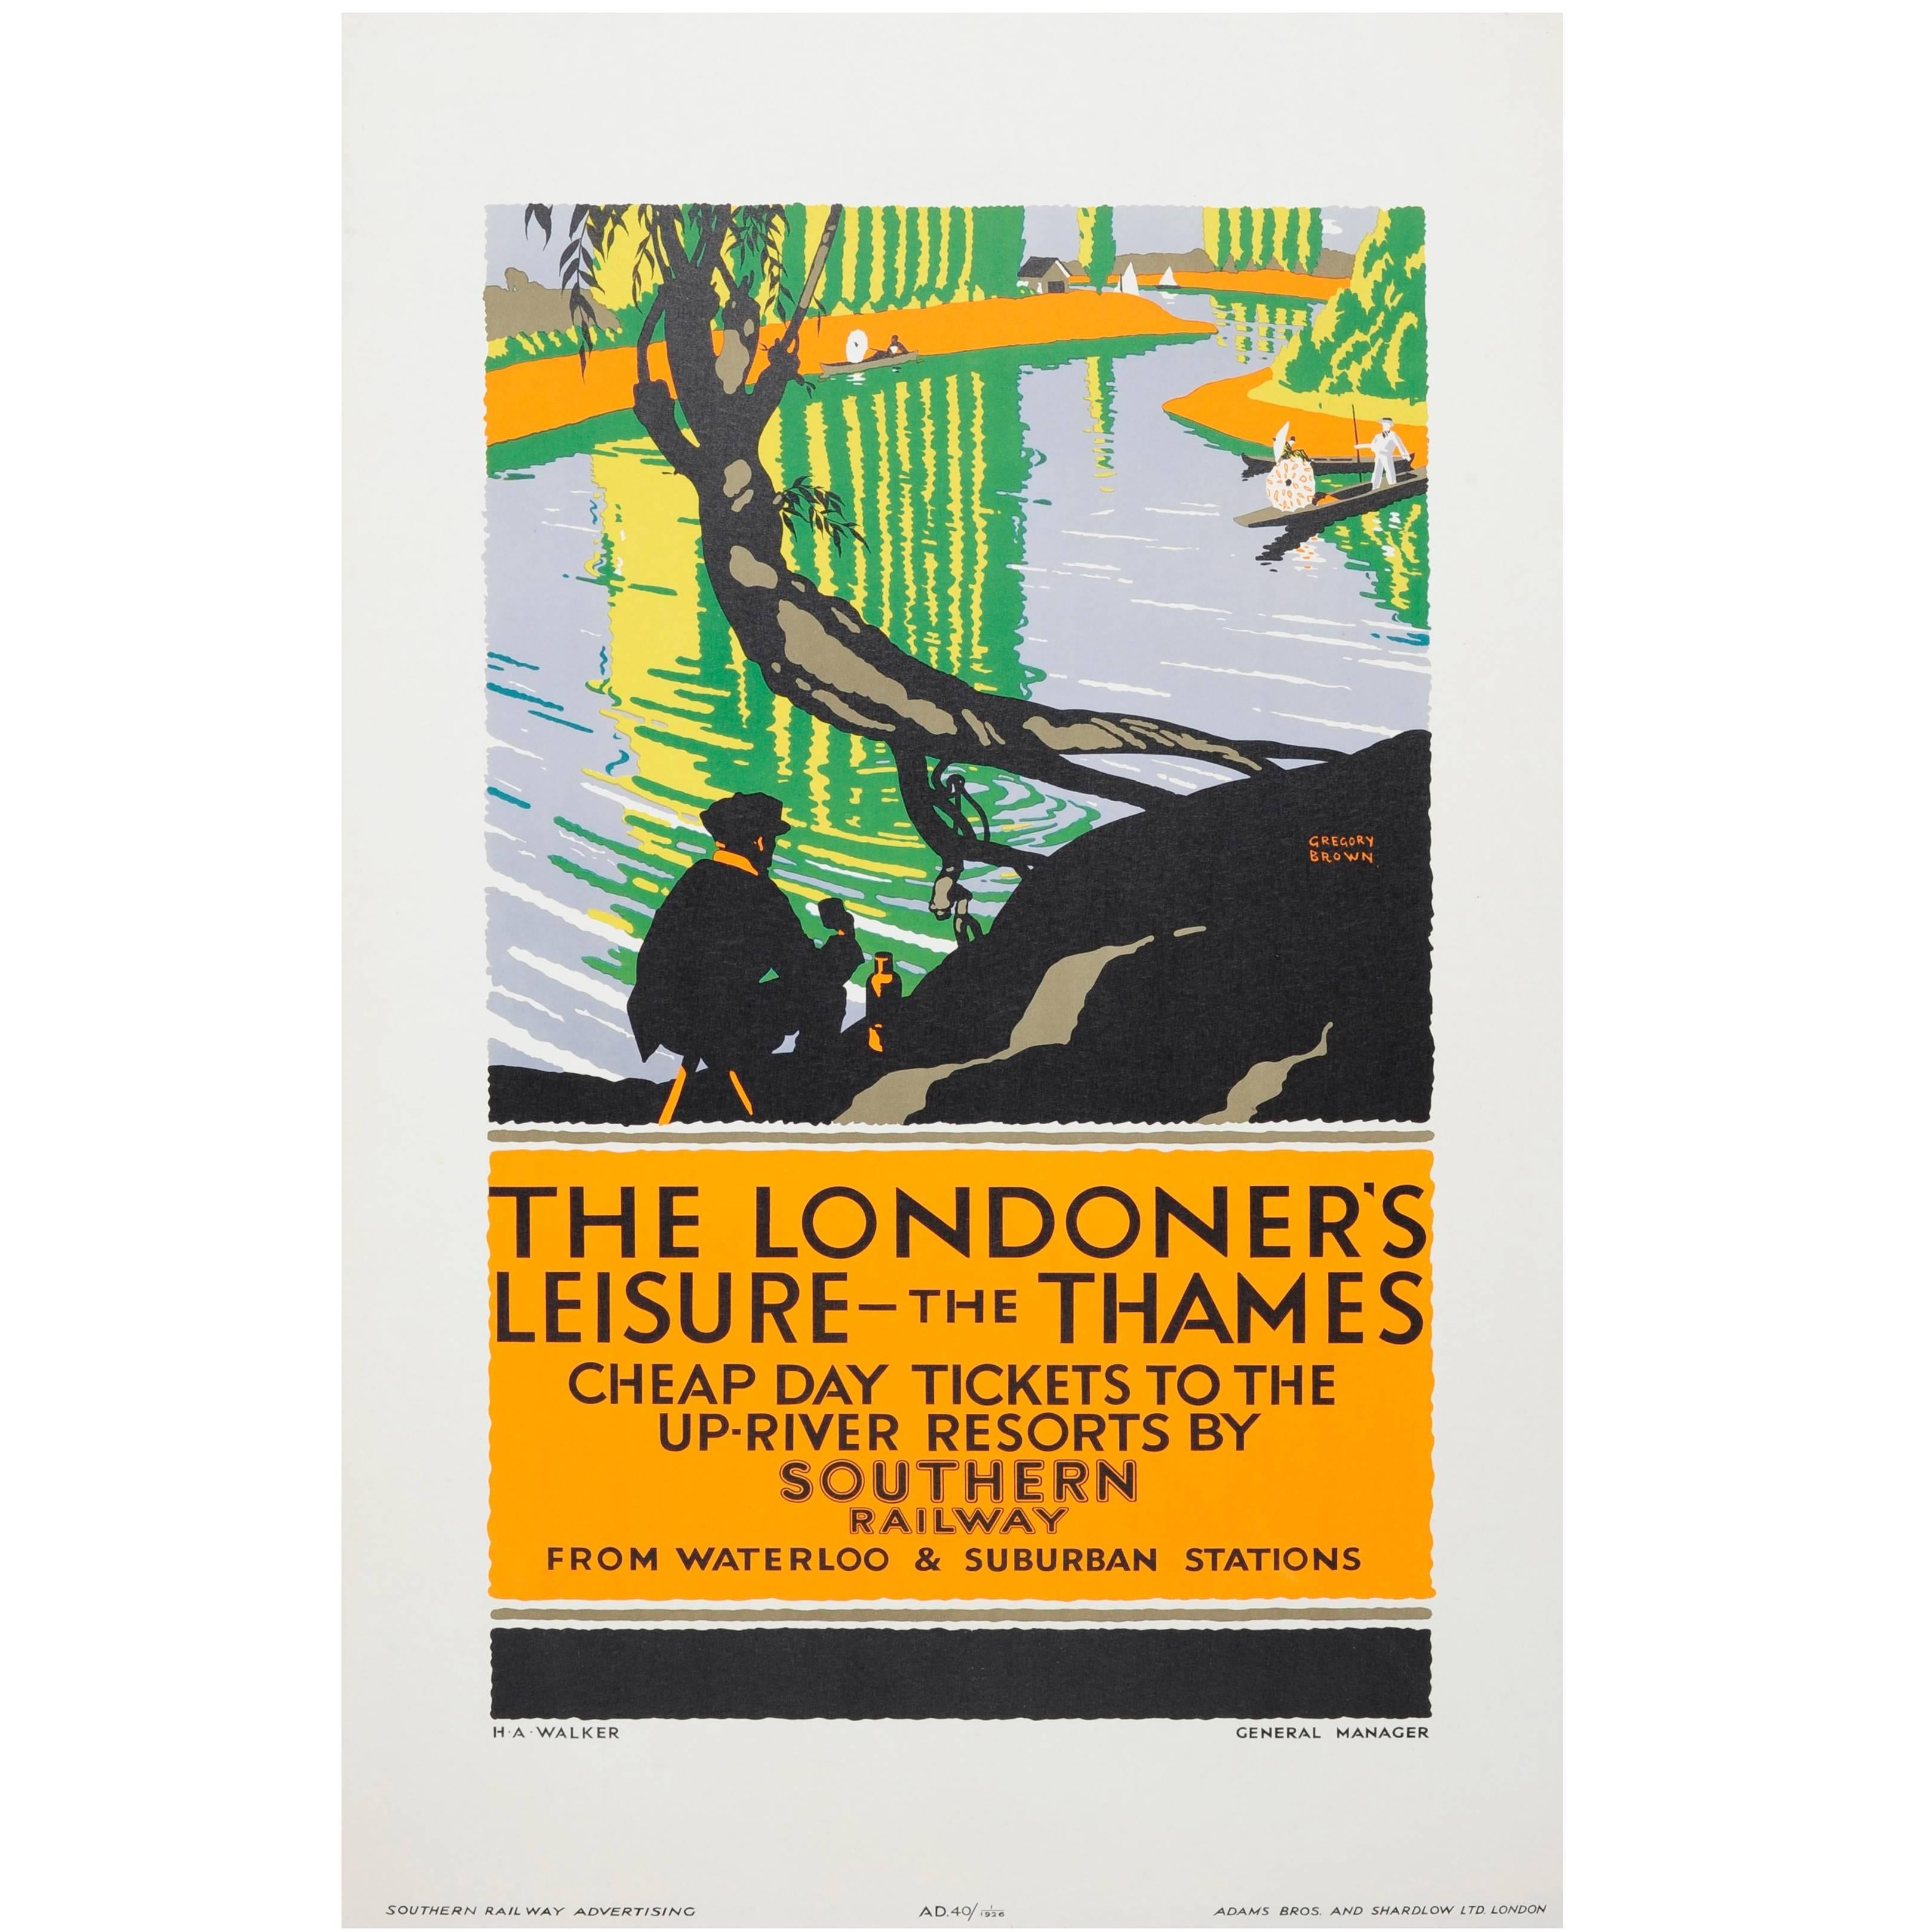 Affiche originale de 1926 des chemins de fer du Sud - The Londoner's Leisure Thames Resorts